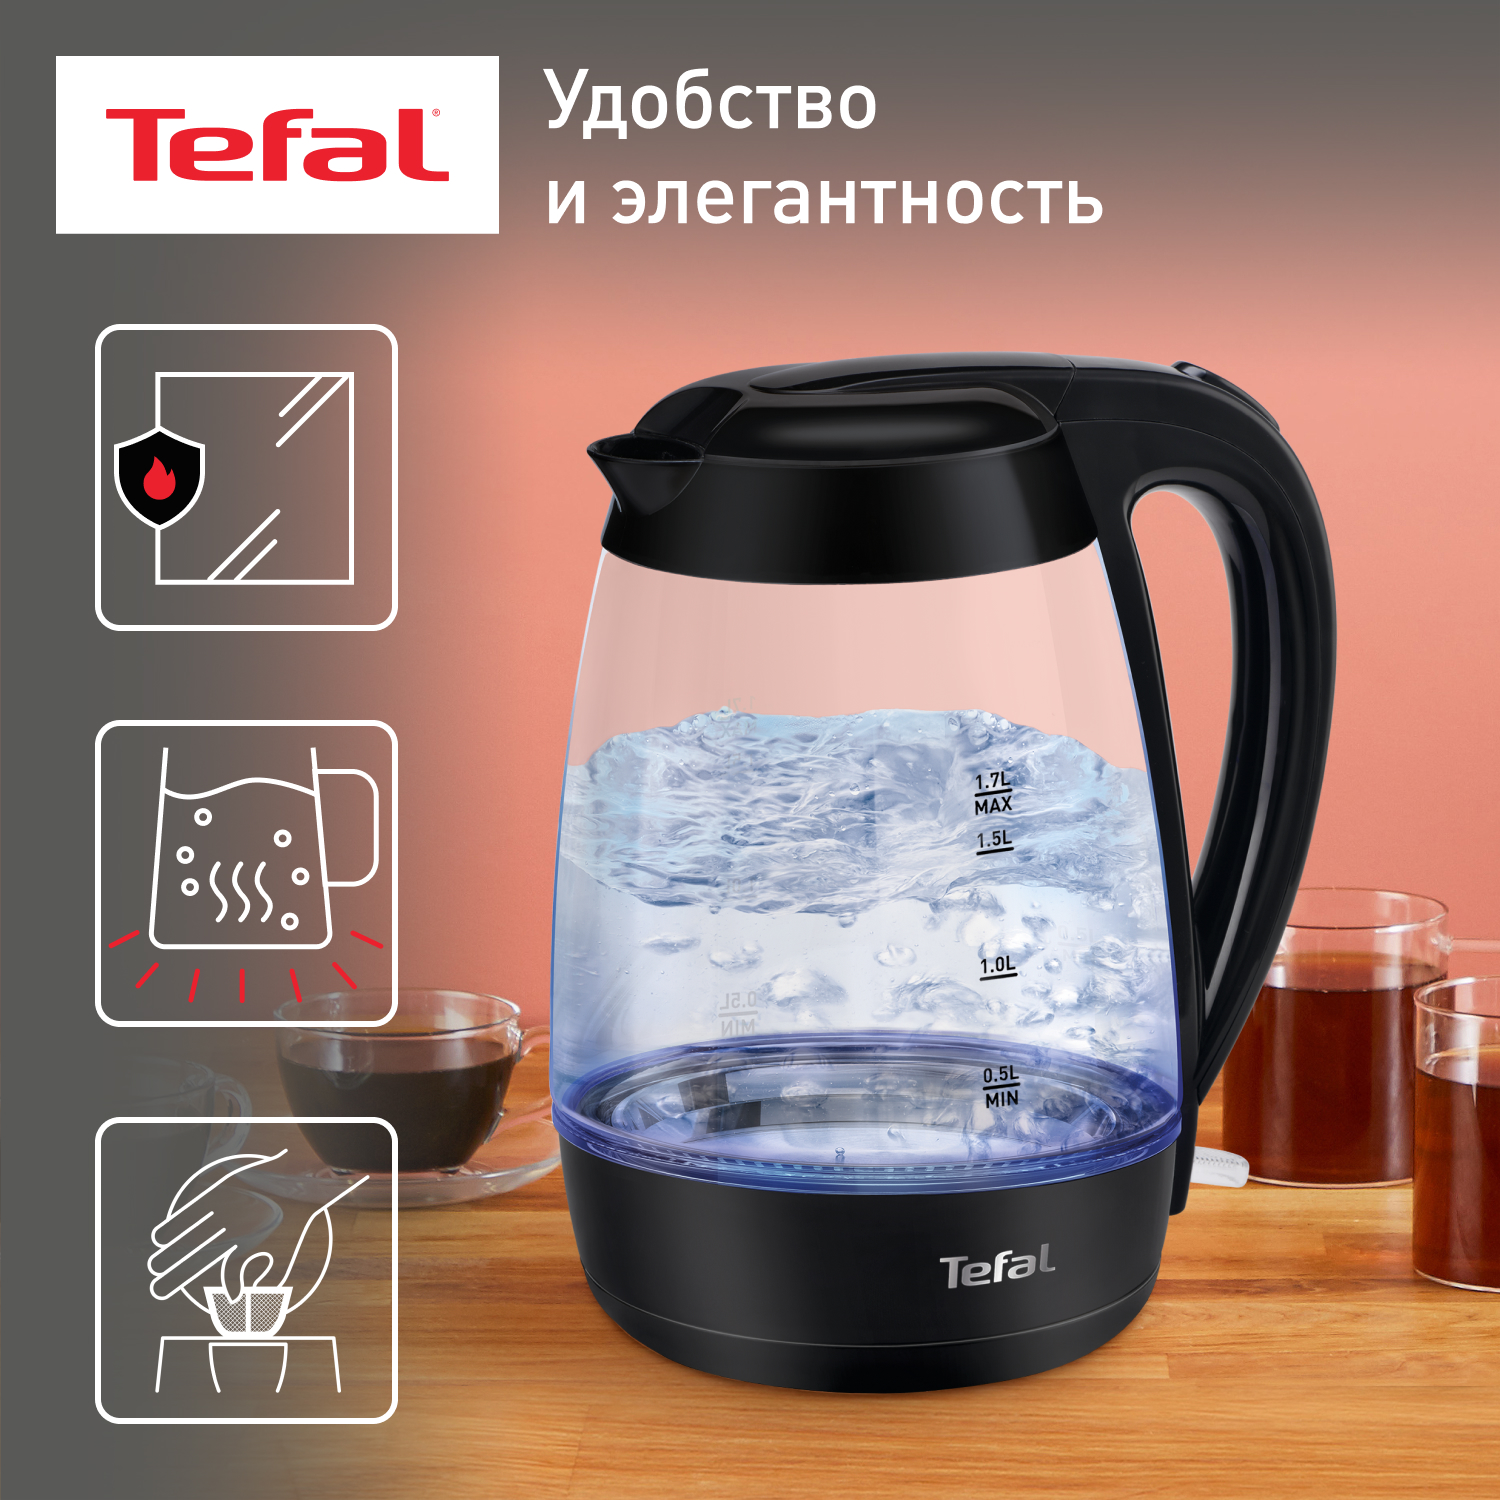 Чайник электрический Tefal Glass KO450832, 1.7 л, черный